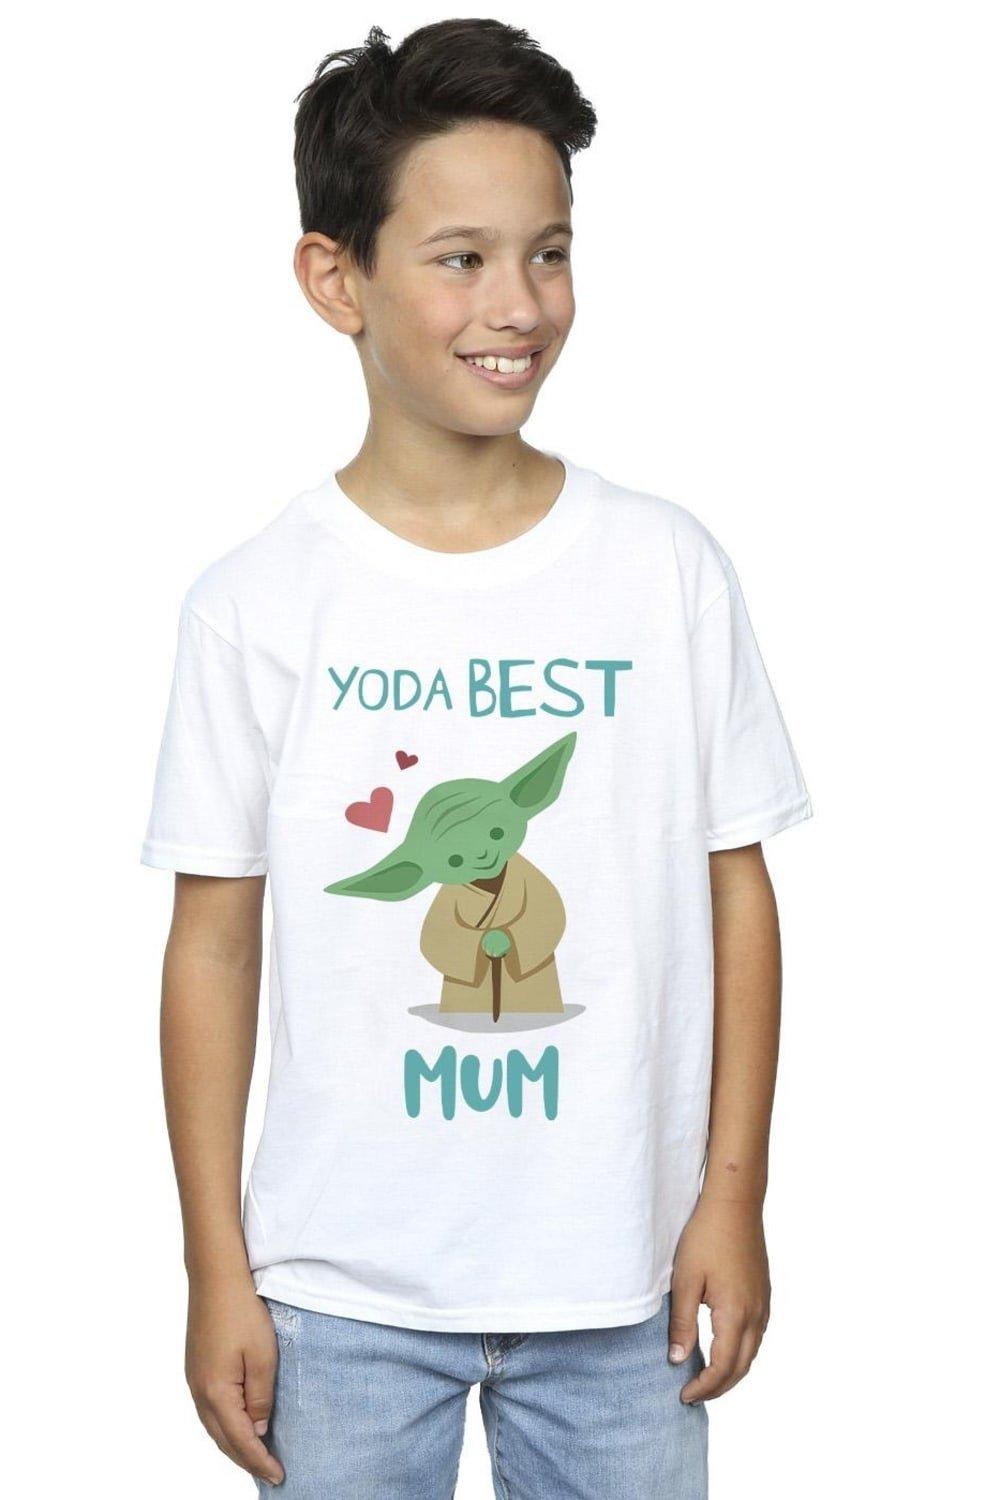 Yoda Best Mum T-Shirt